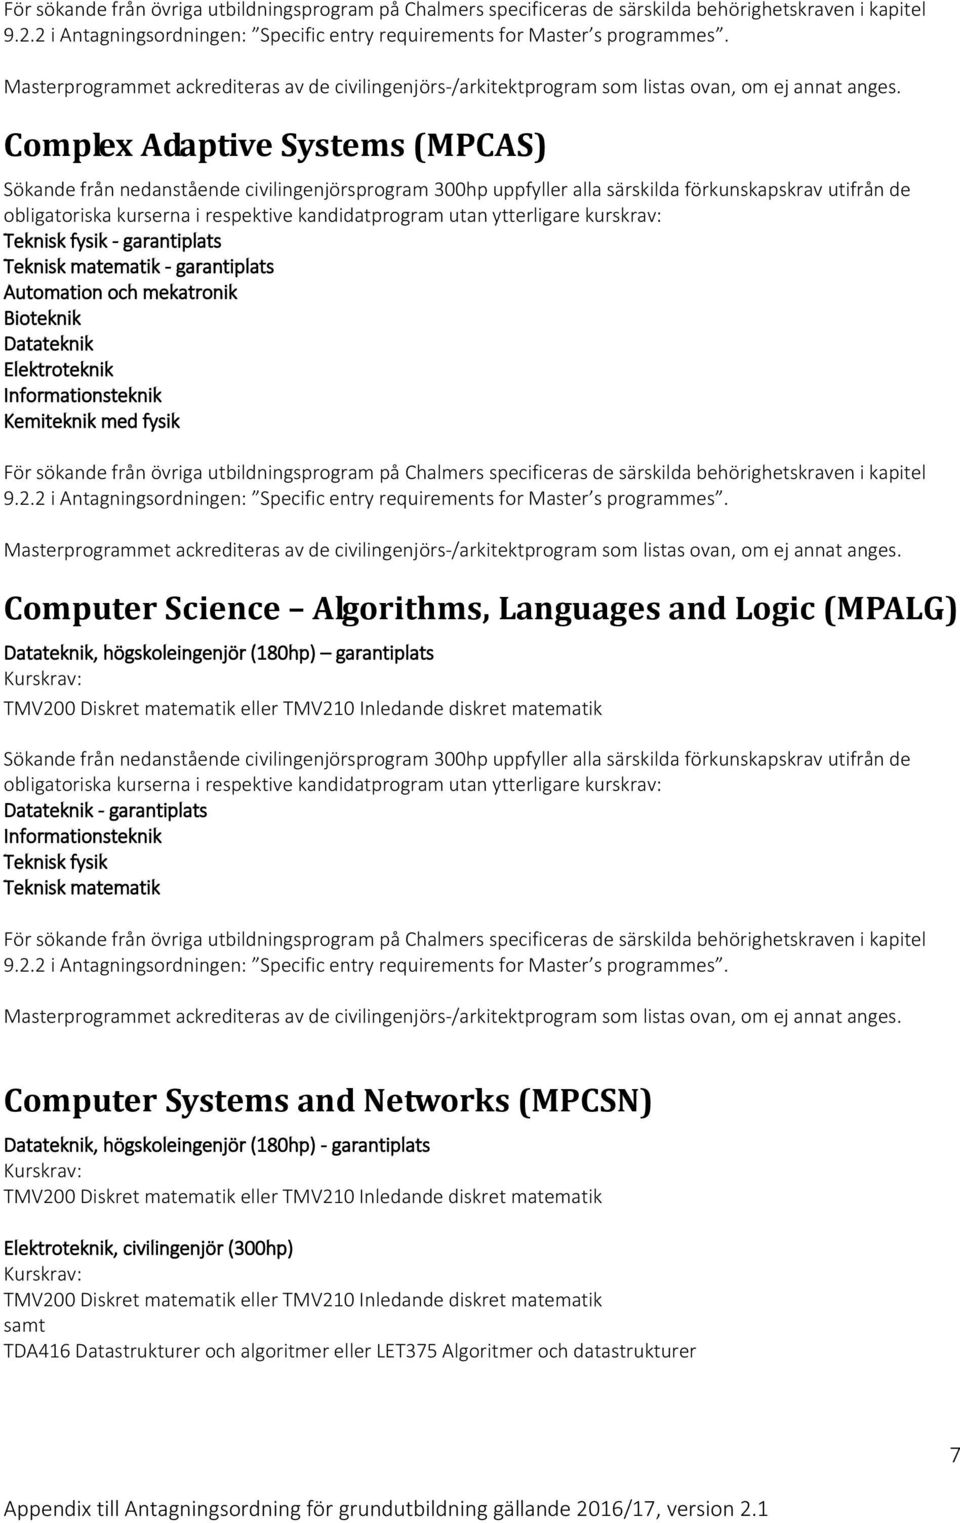 garantiplats Informationsteknik Teknisk fysik Teknisk matematik Computer Systems and Networks (MPCSN) Datateknik, högskoleingenjör (180hp) - garantiplats TMV200 Diskret matematik eller TMV210